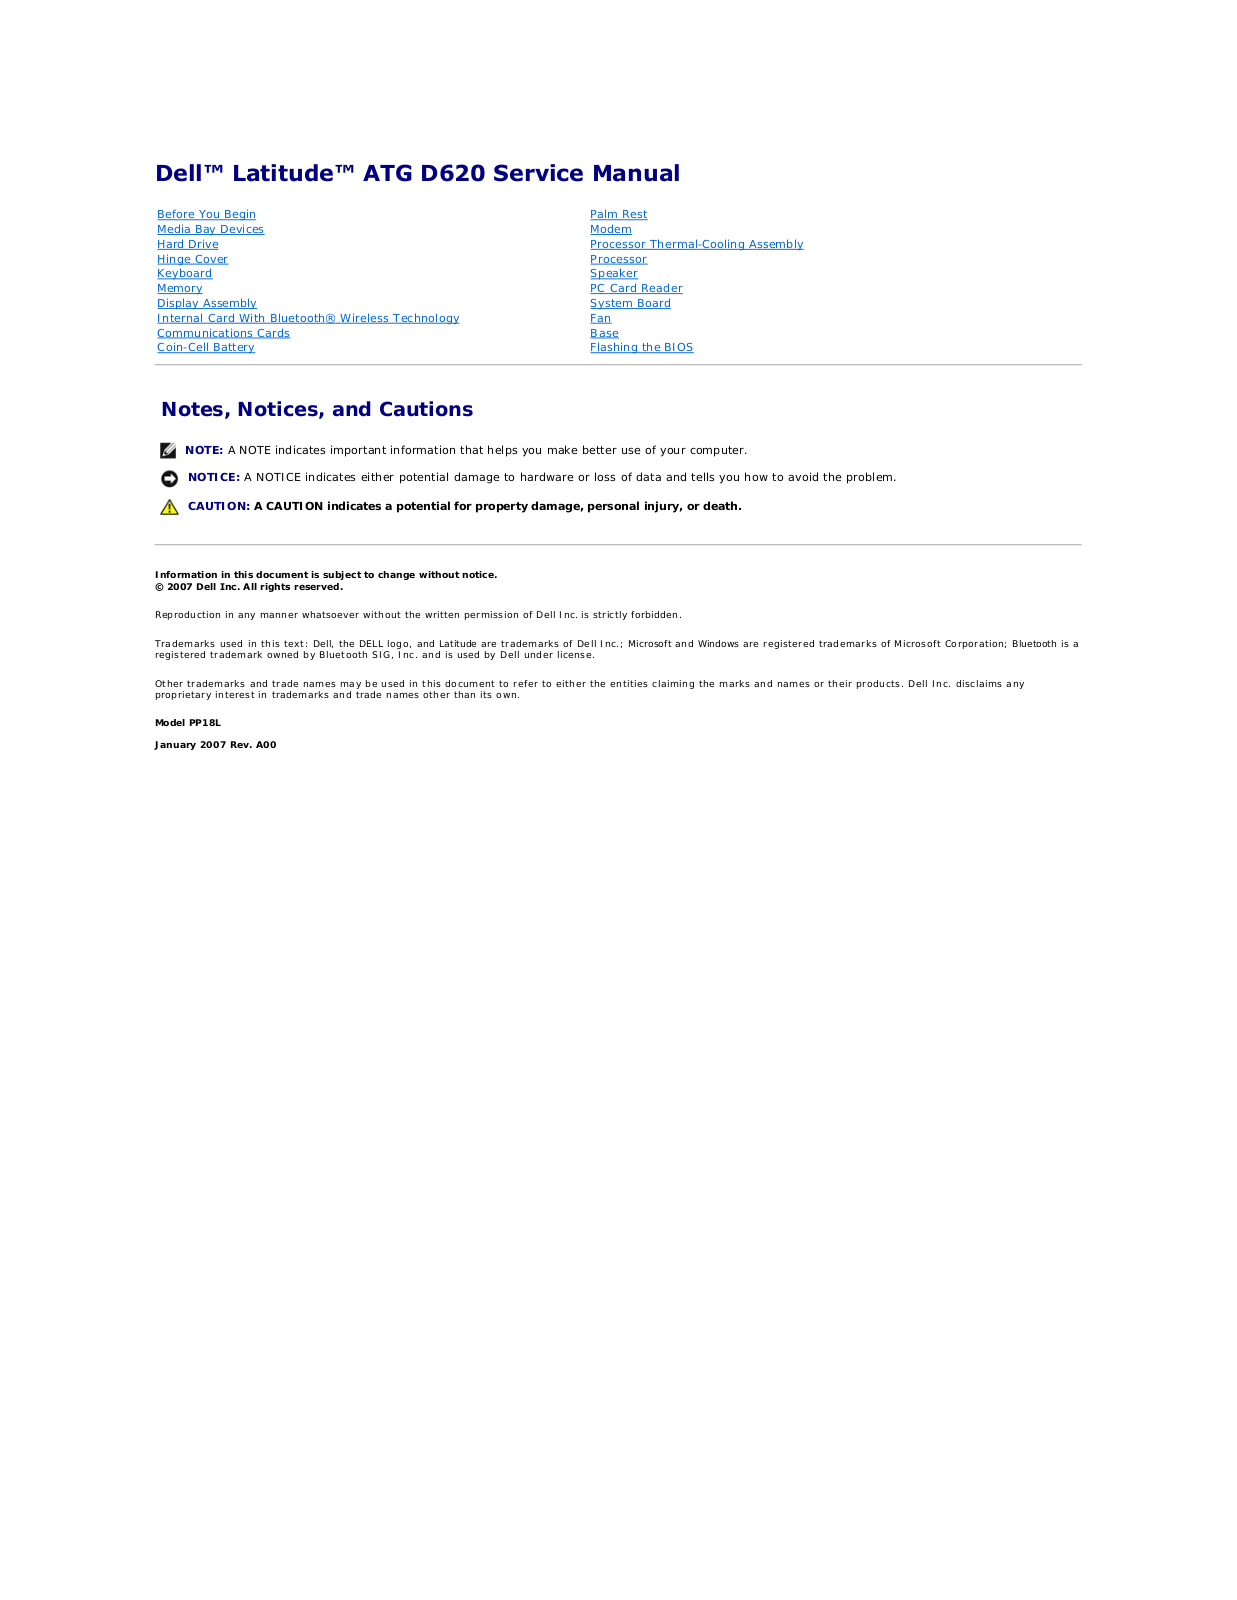 Dell ATG D620 User Manual